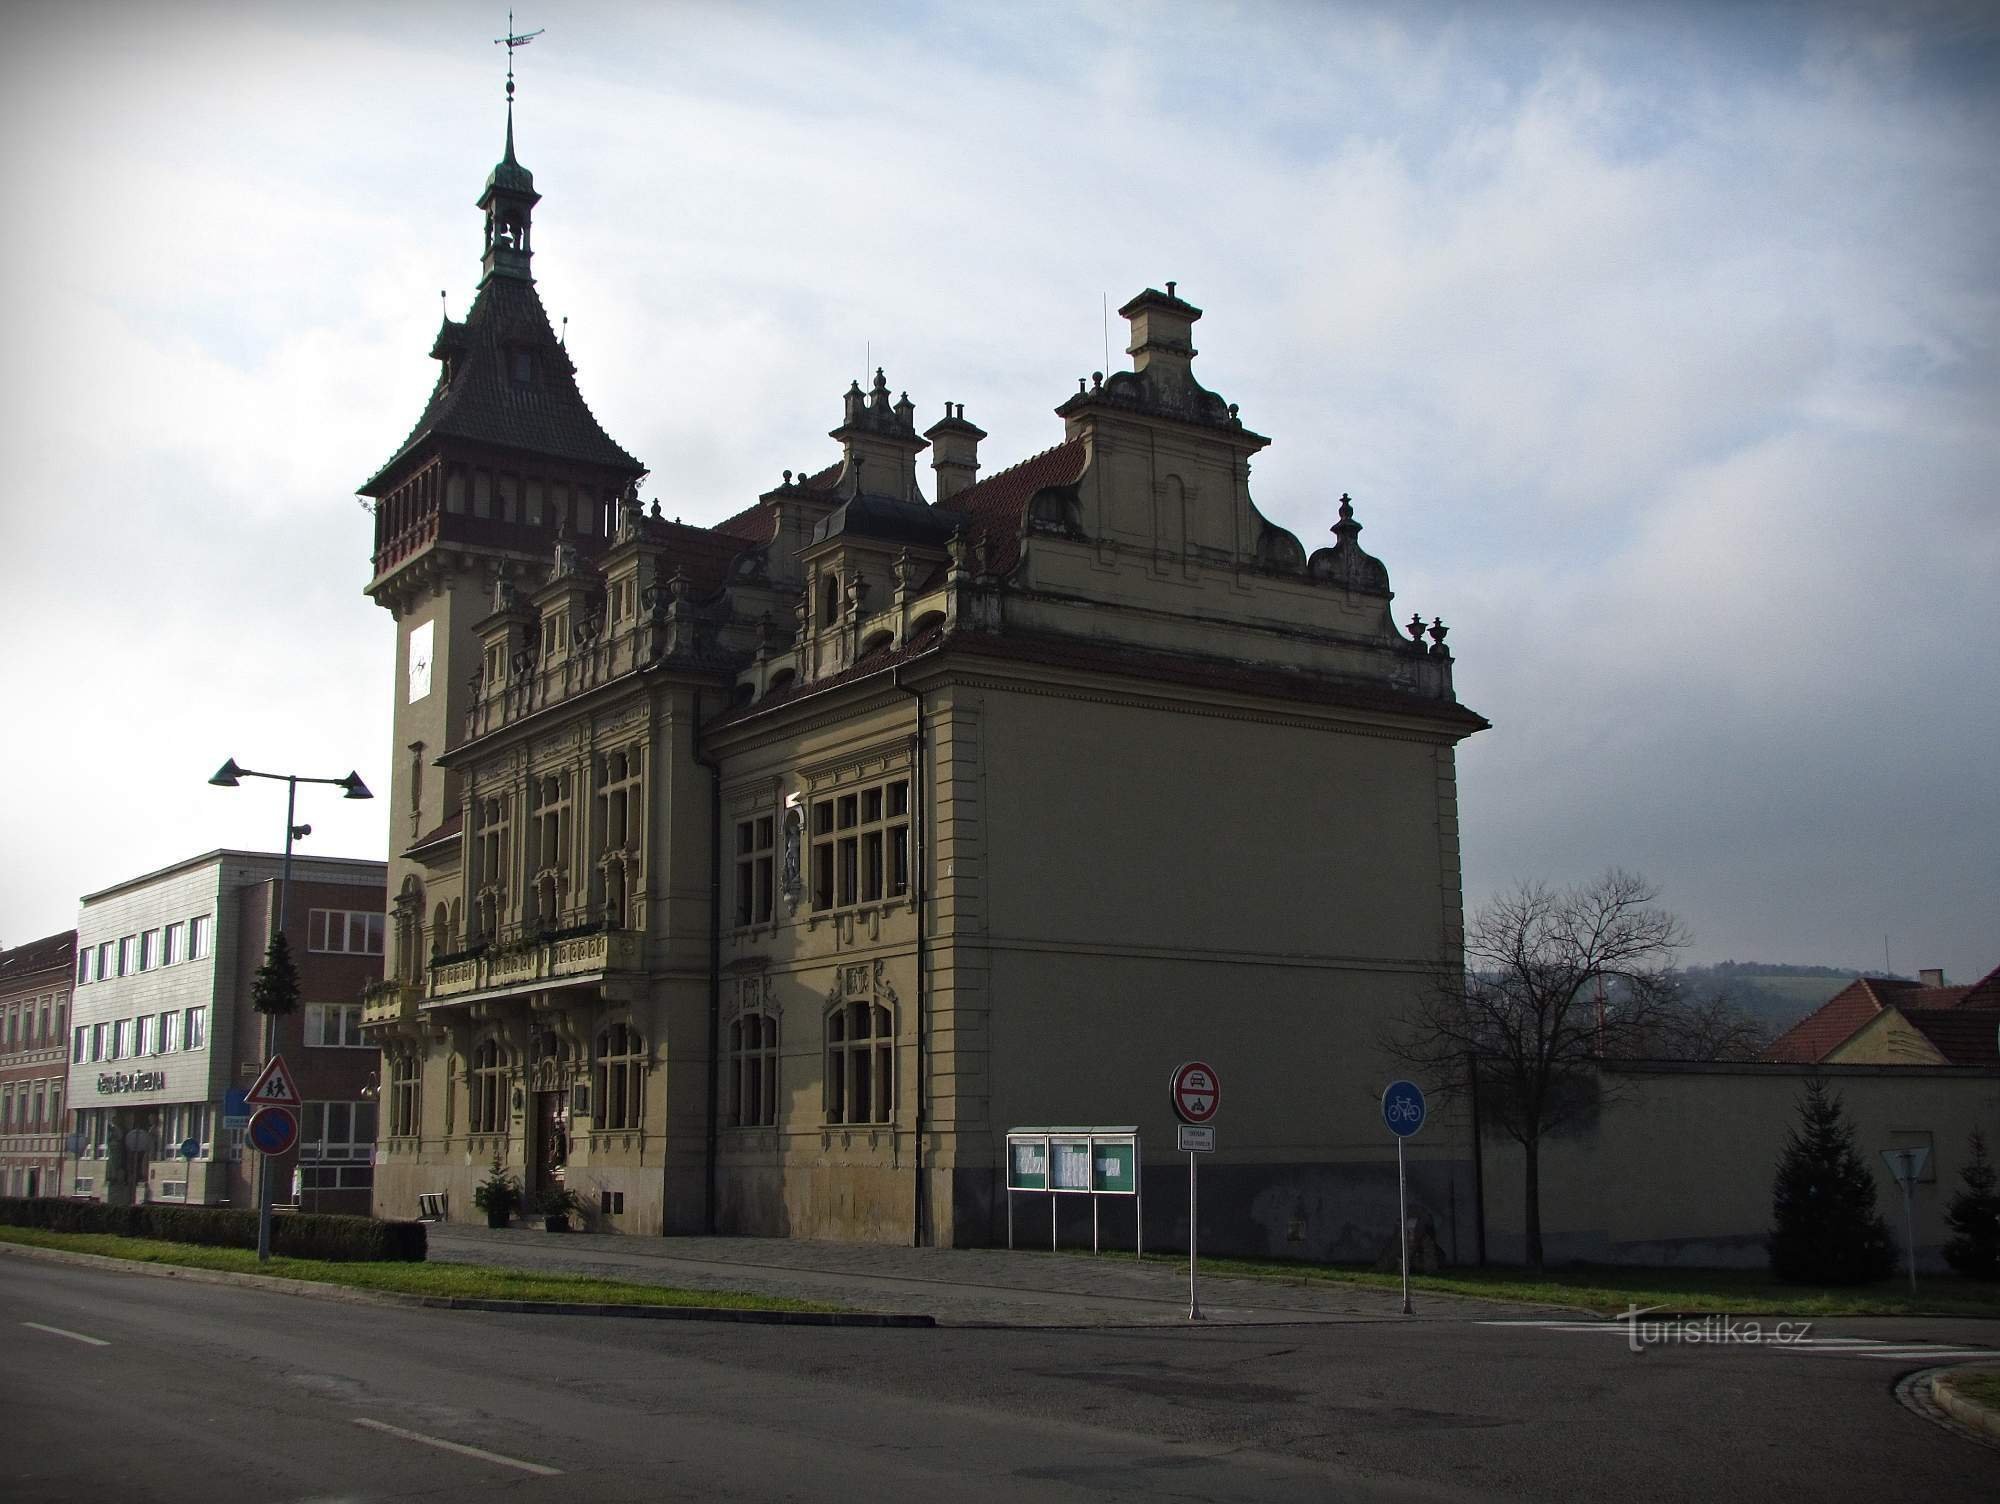 Tòa thị chính Napajedelsk